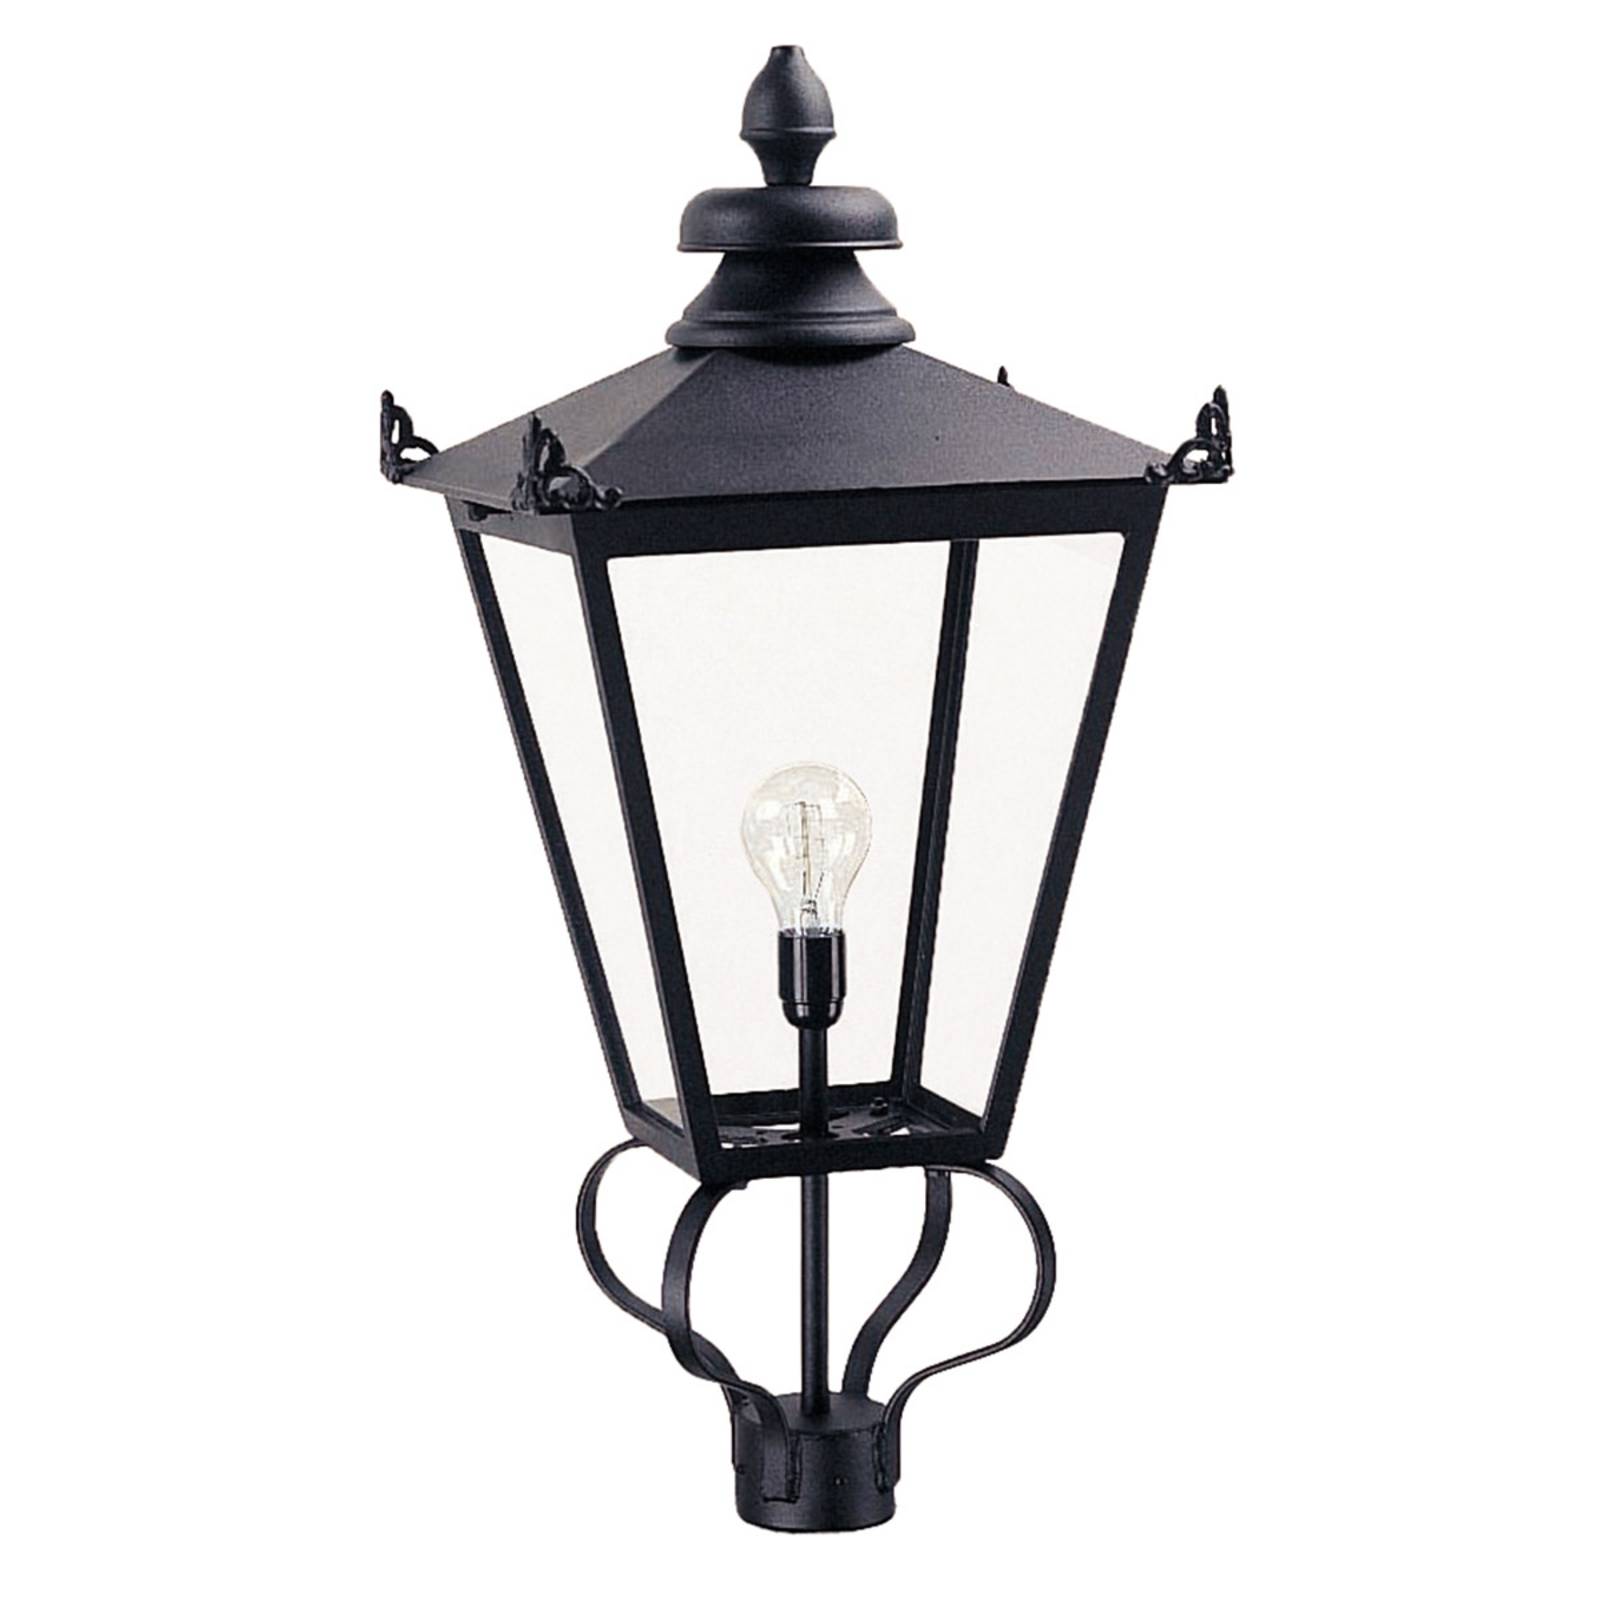 Wilmslow gadelampe, sort, 1 lyskilde, højde 82,5cm